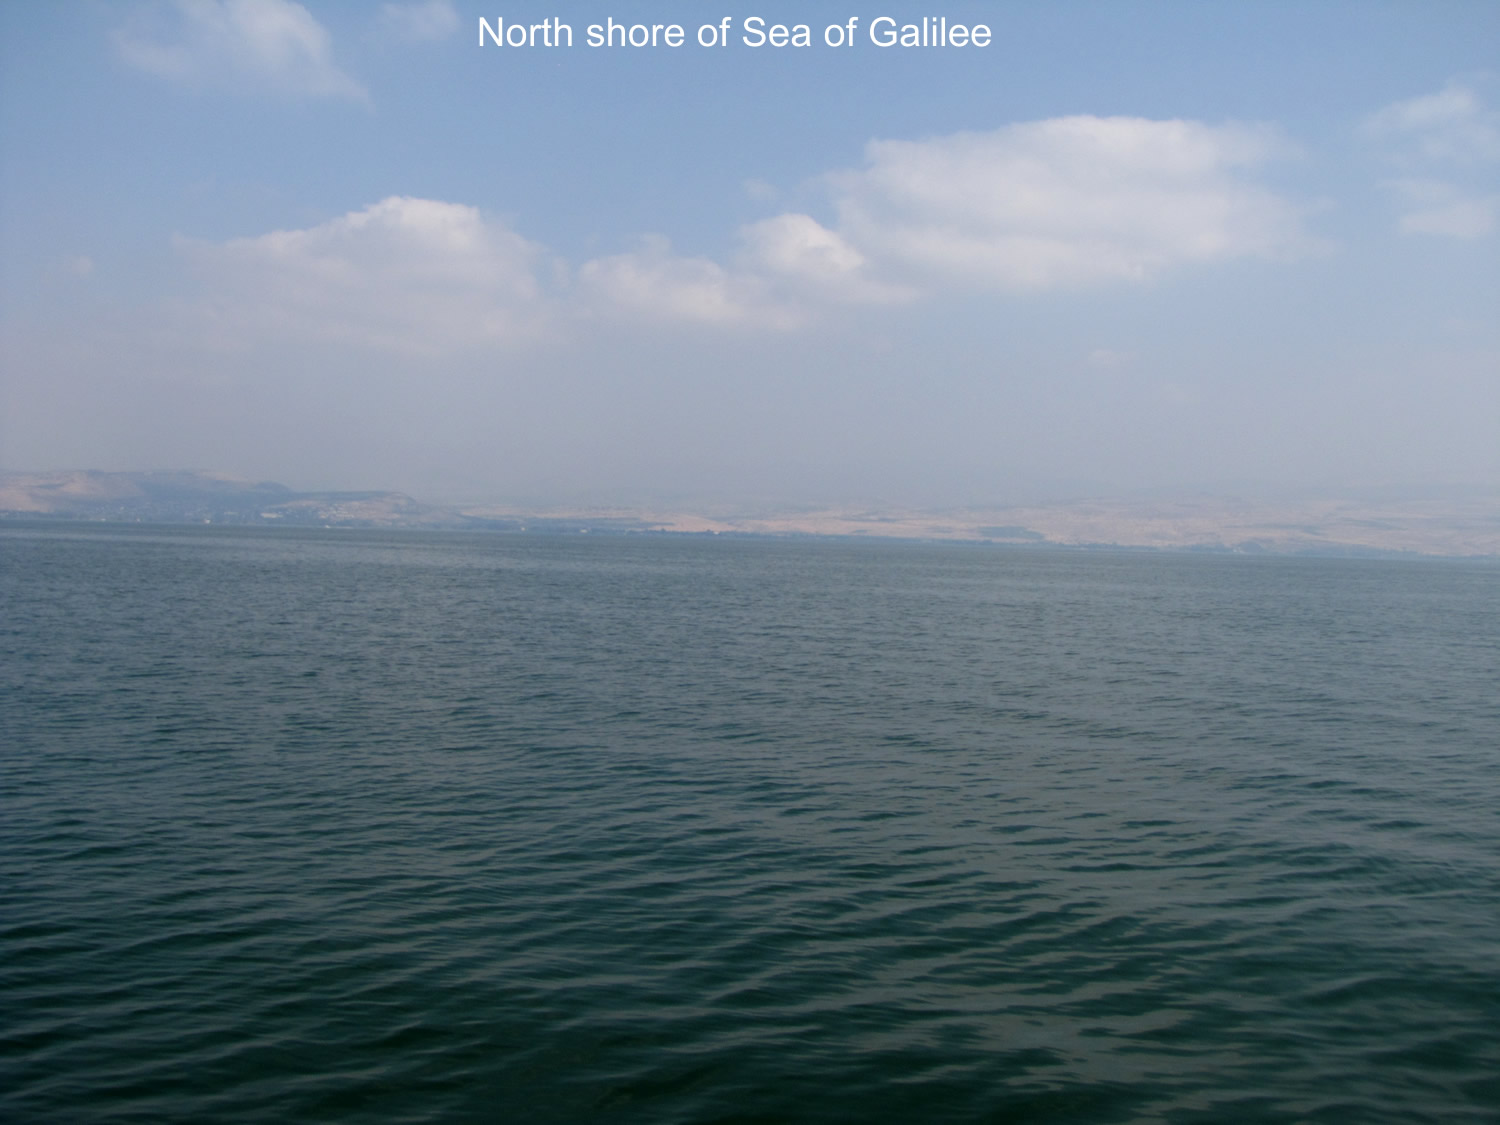 Sea of Galilee, north coast